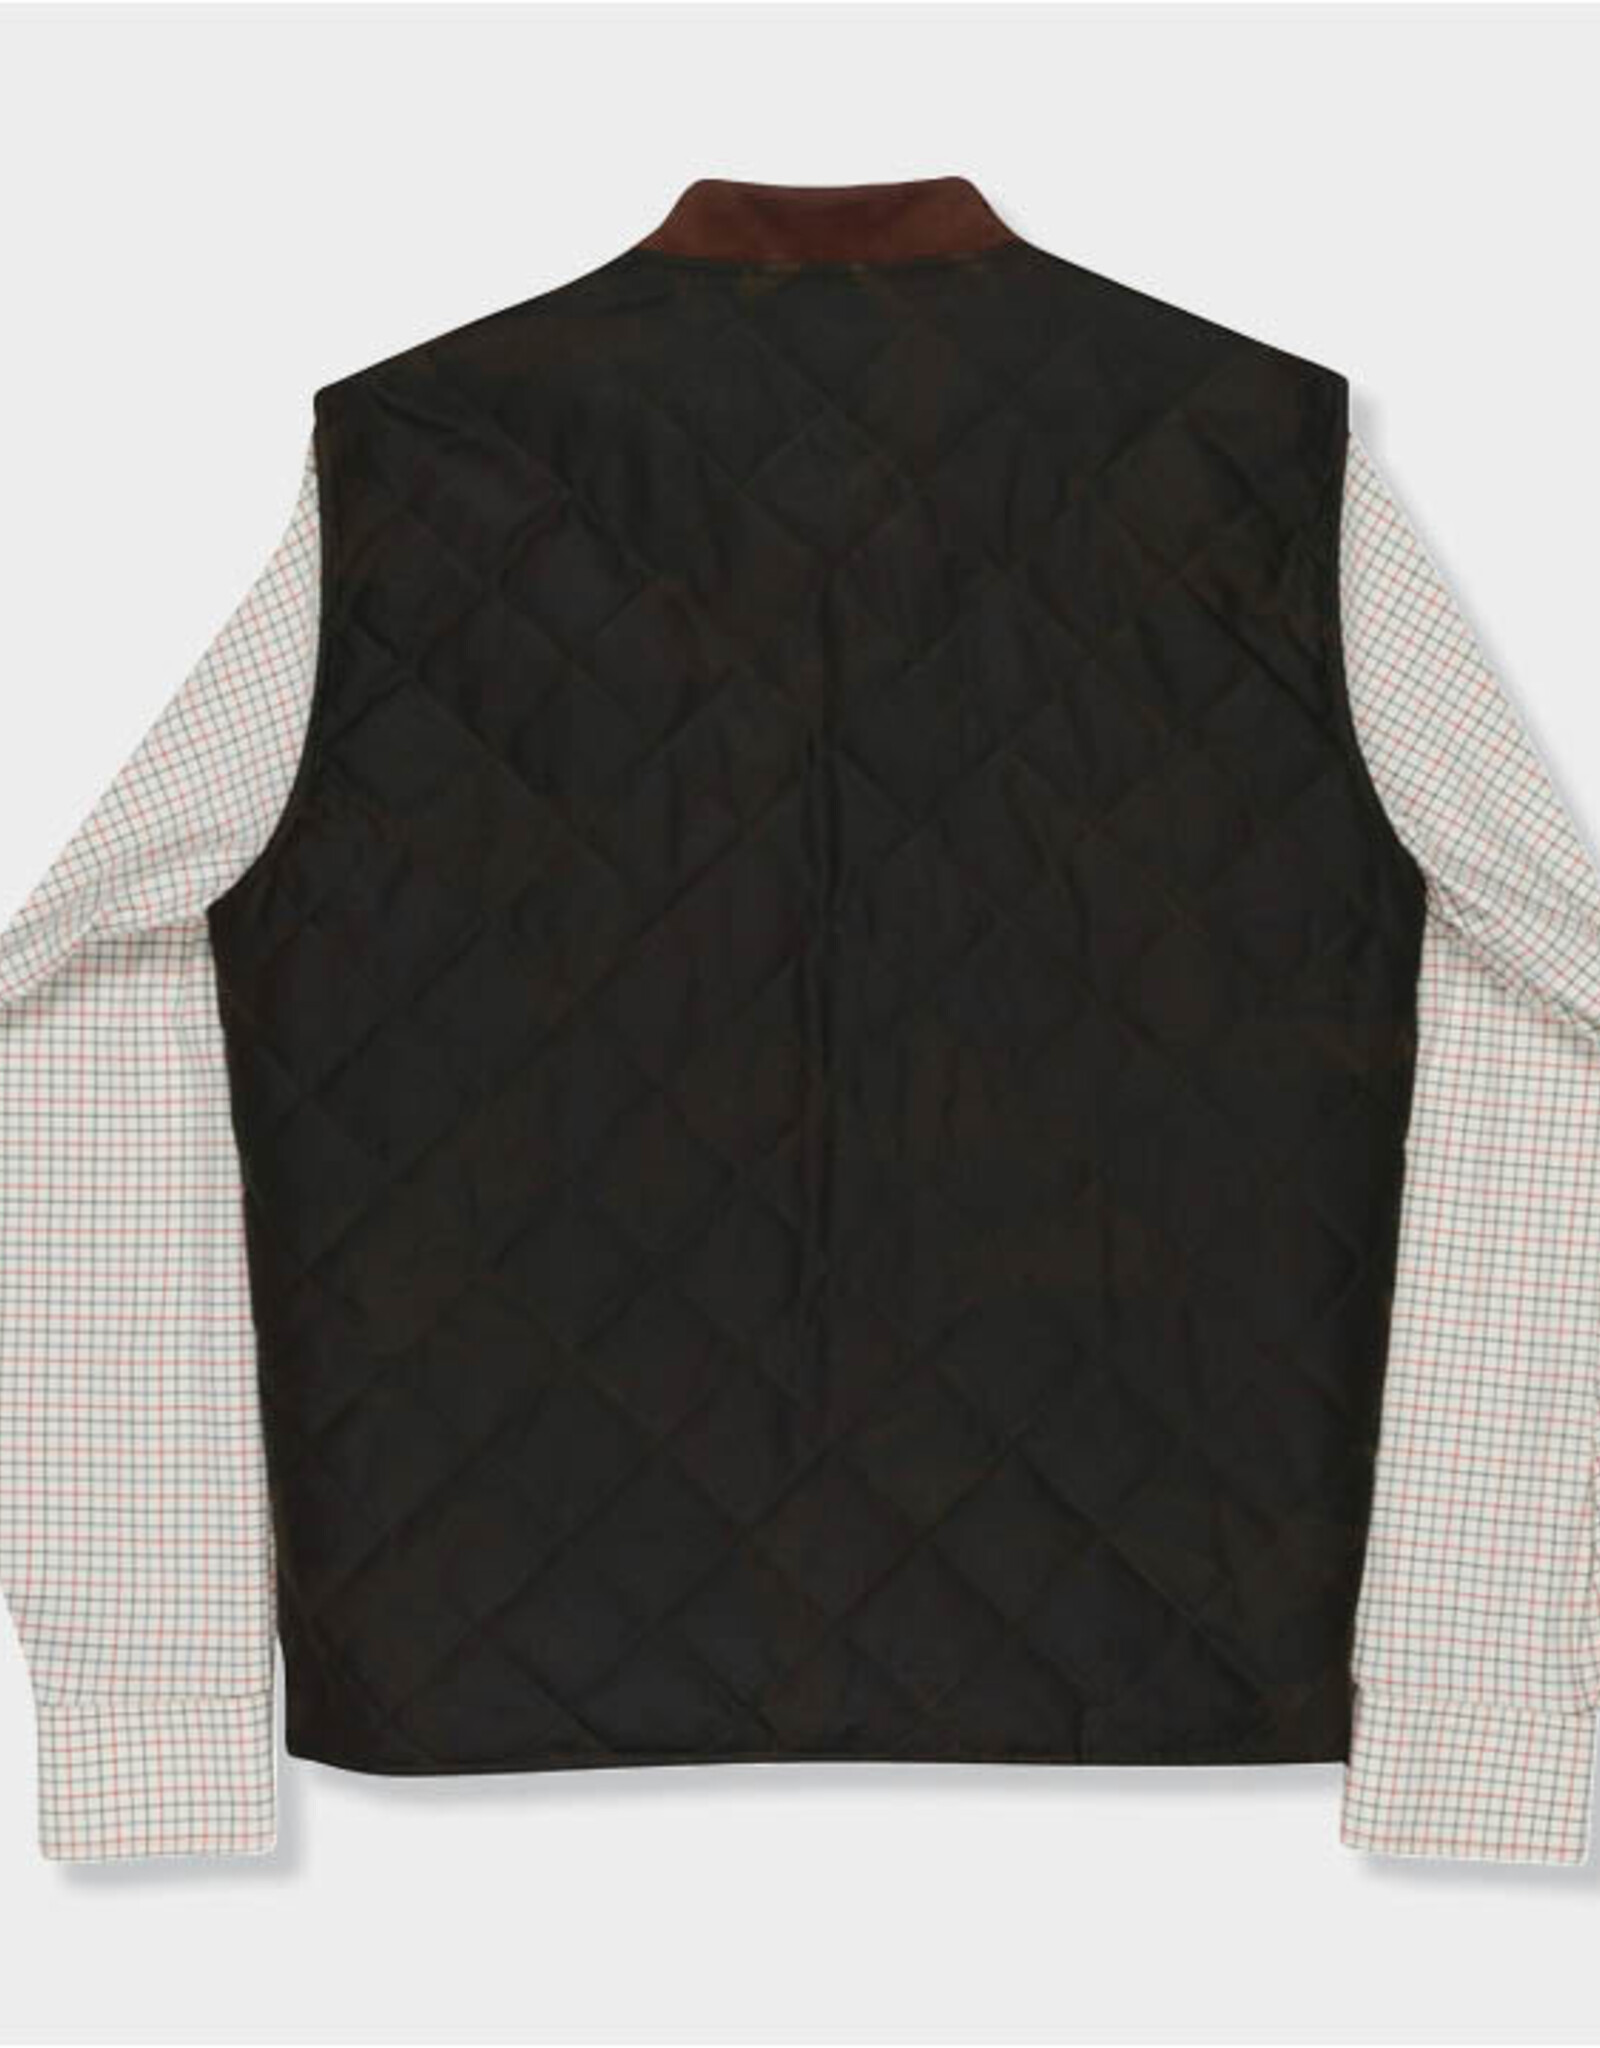 GenTeal Genteal Waxed Cotton Vest